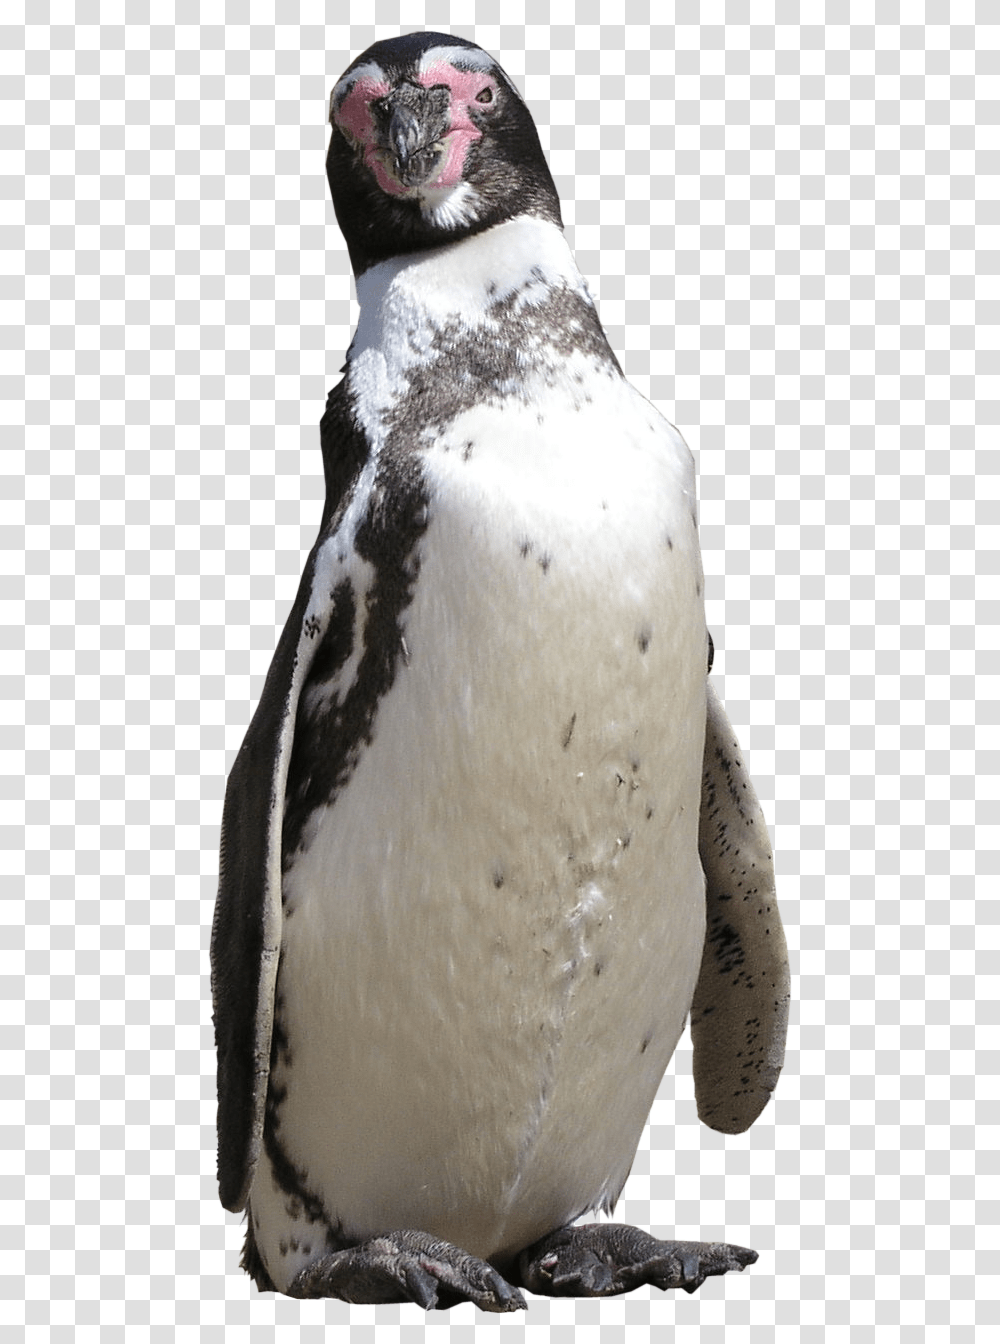 Penguin, Bird, Animal, King Penguin Transparent Png